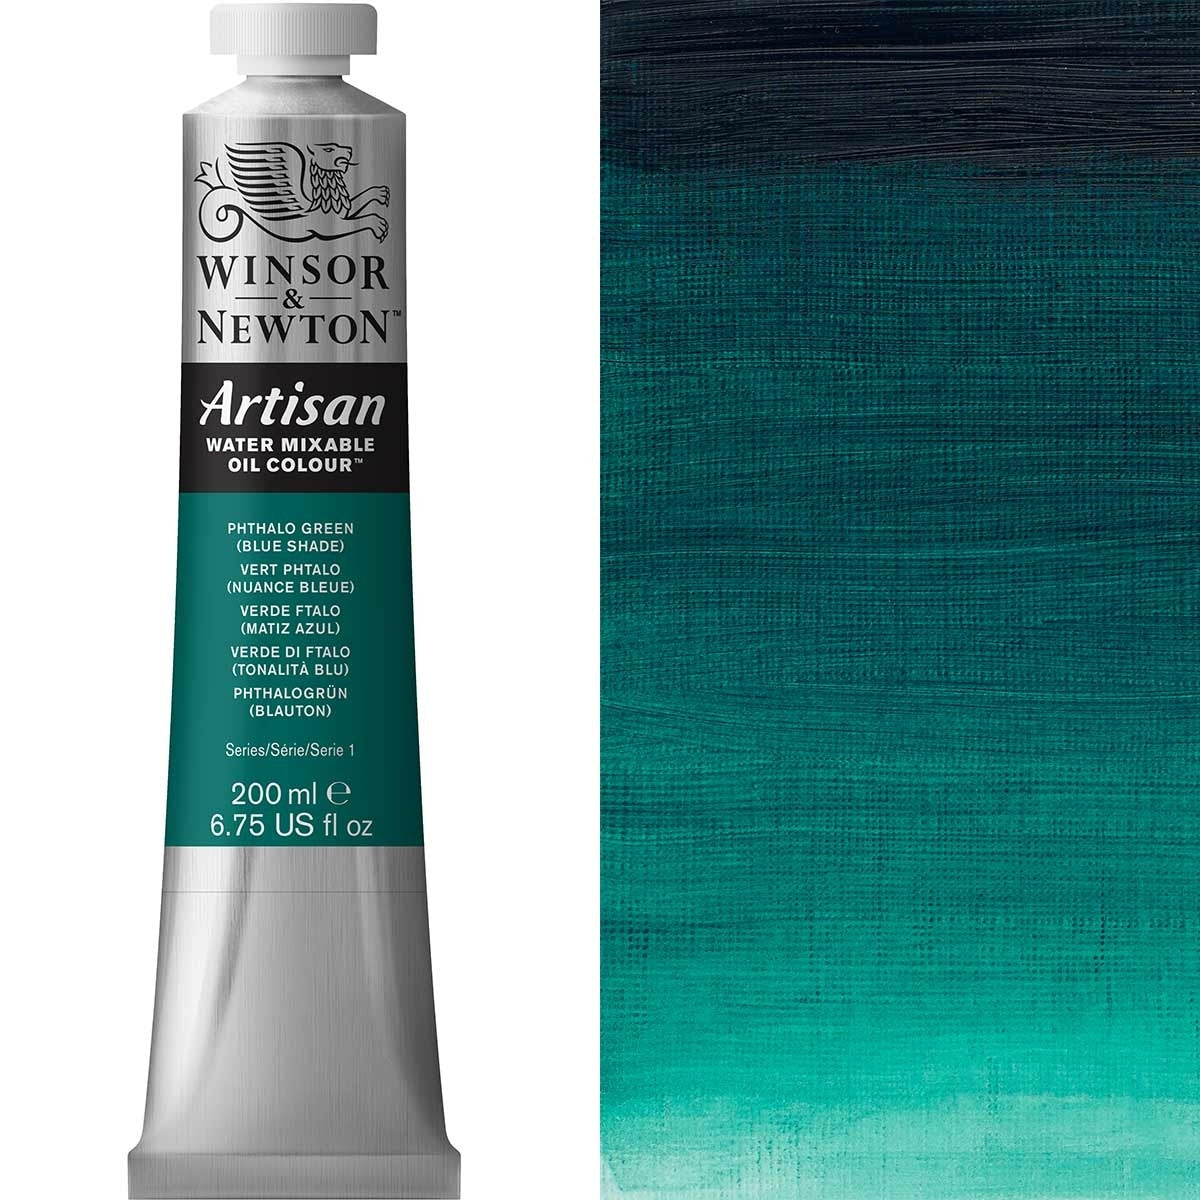 Winsor e Newton - Watermixable di colore olio artigianale - 200 ml - tonalità blu verde phthalo